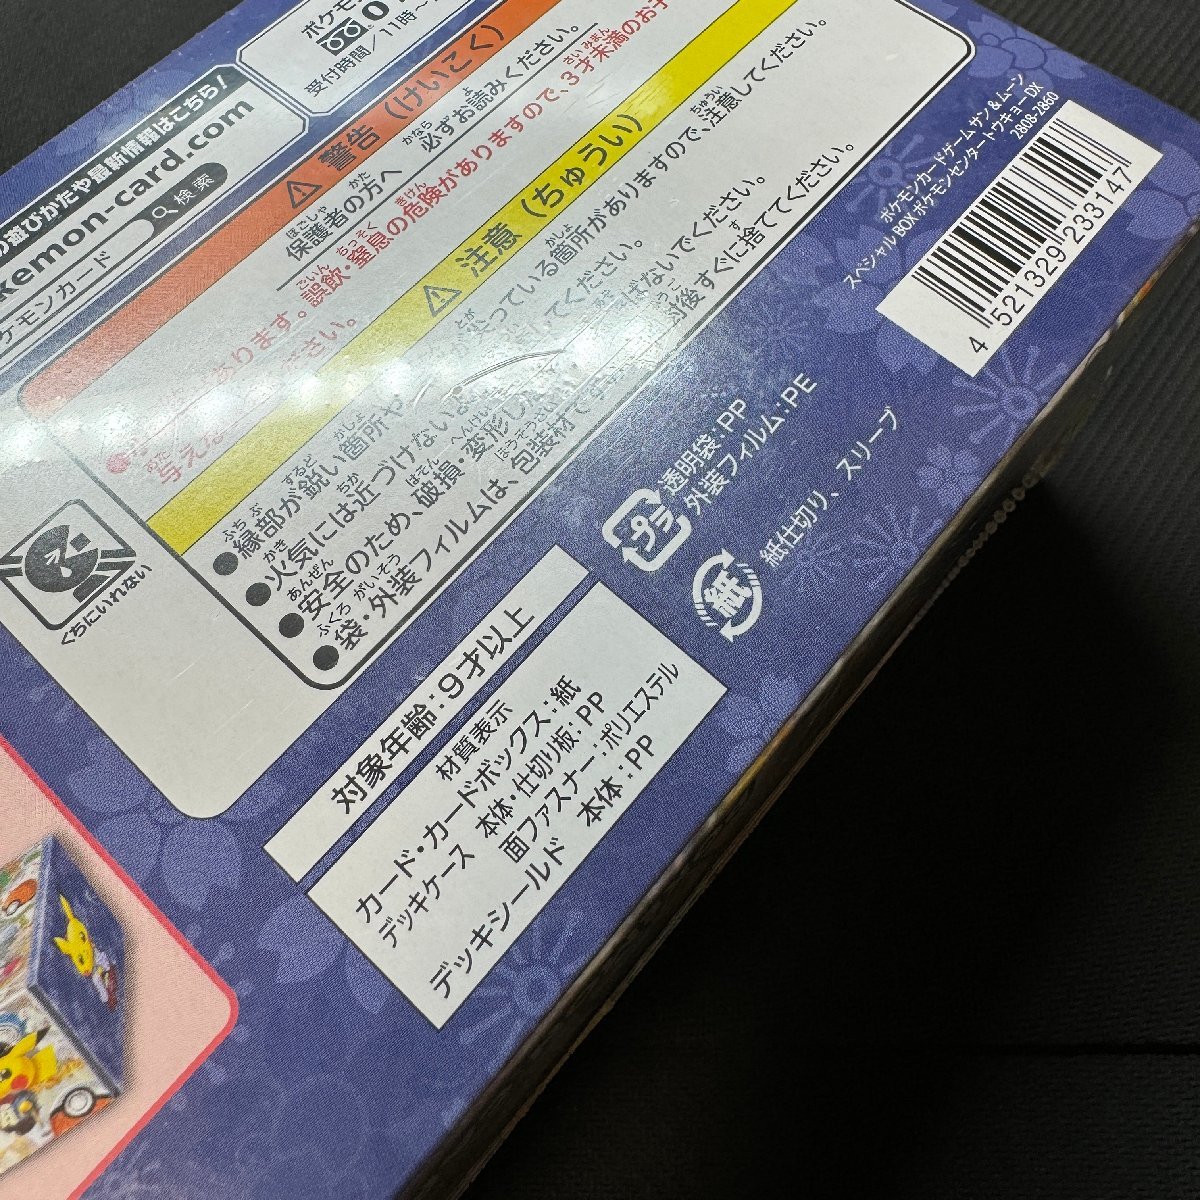 スペシャルBOX ポケモンセンタートウキョーDX 未開封 シュリンク付き BOX 袴姿のピカチュウ ポケカ Japanese Pokemon Card_画像7